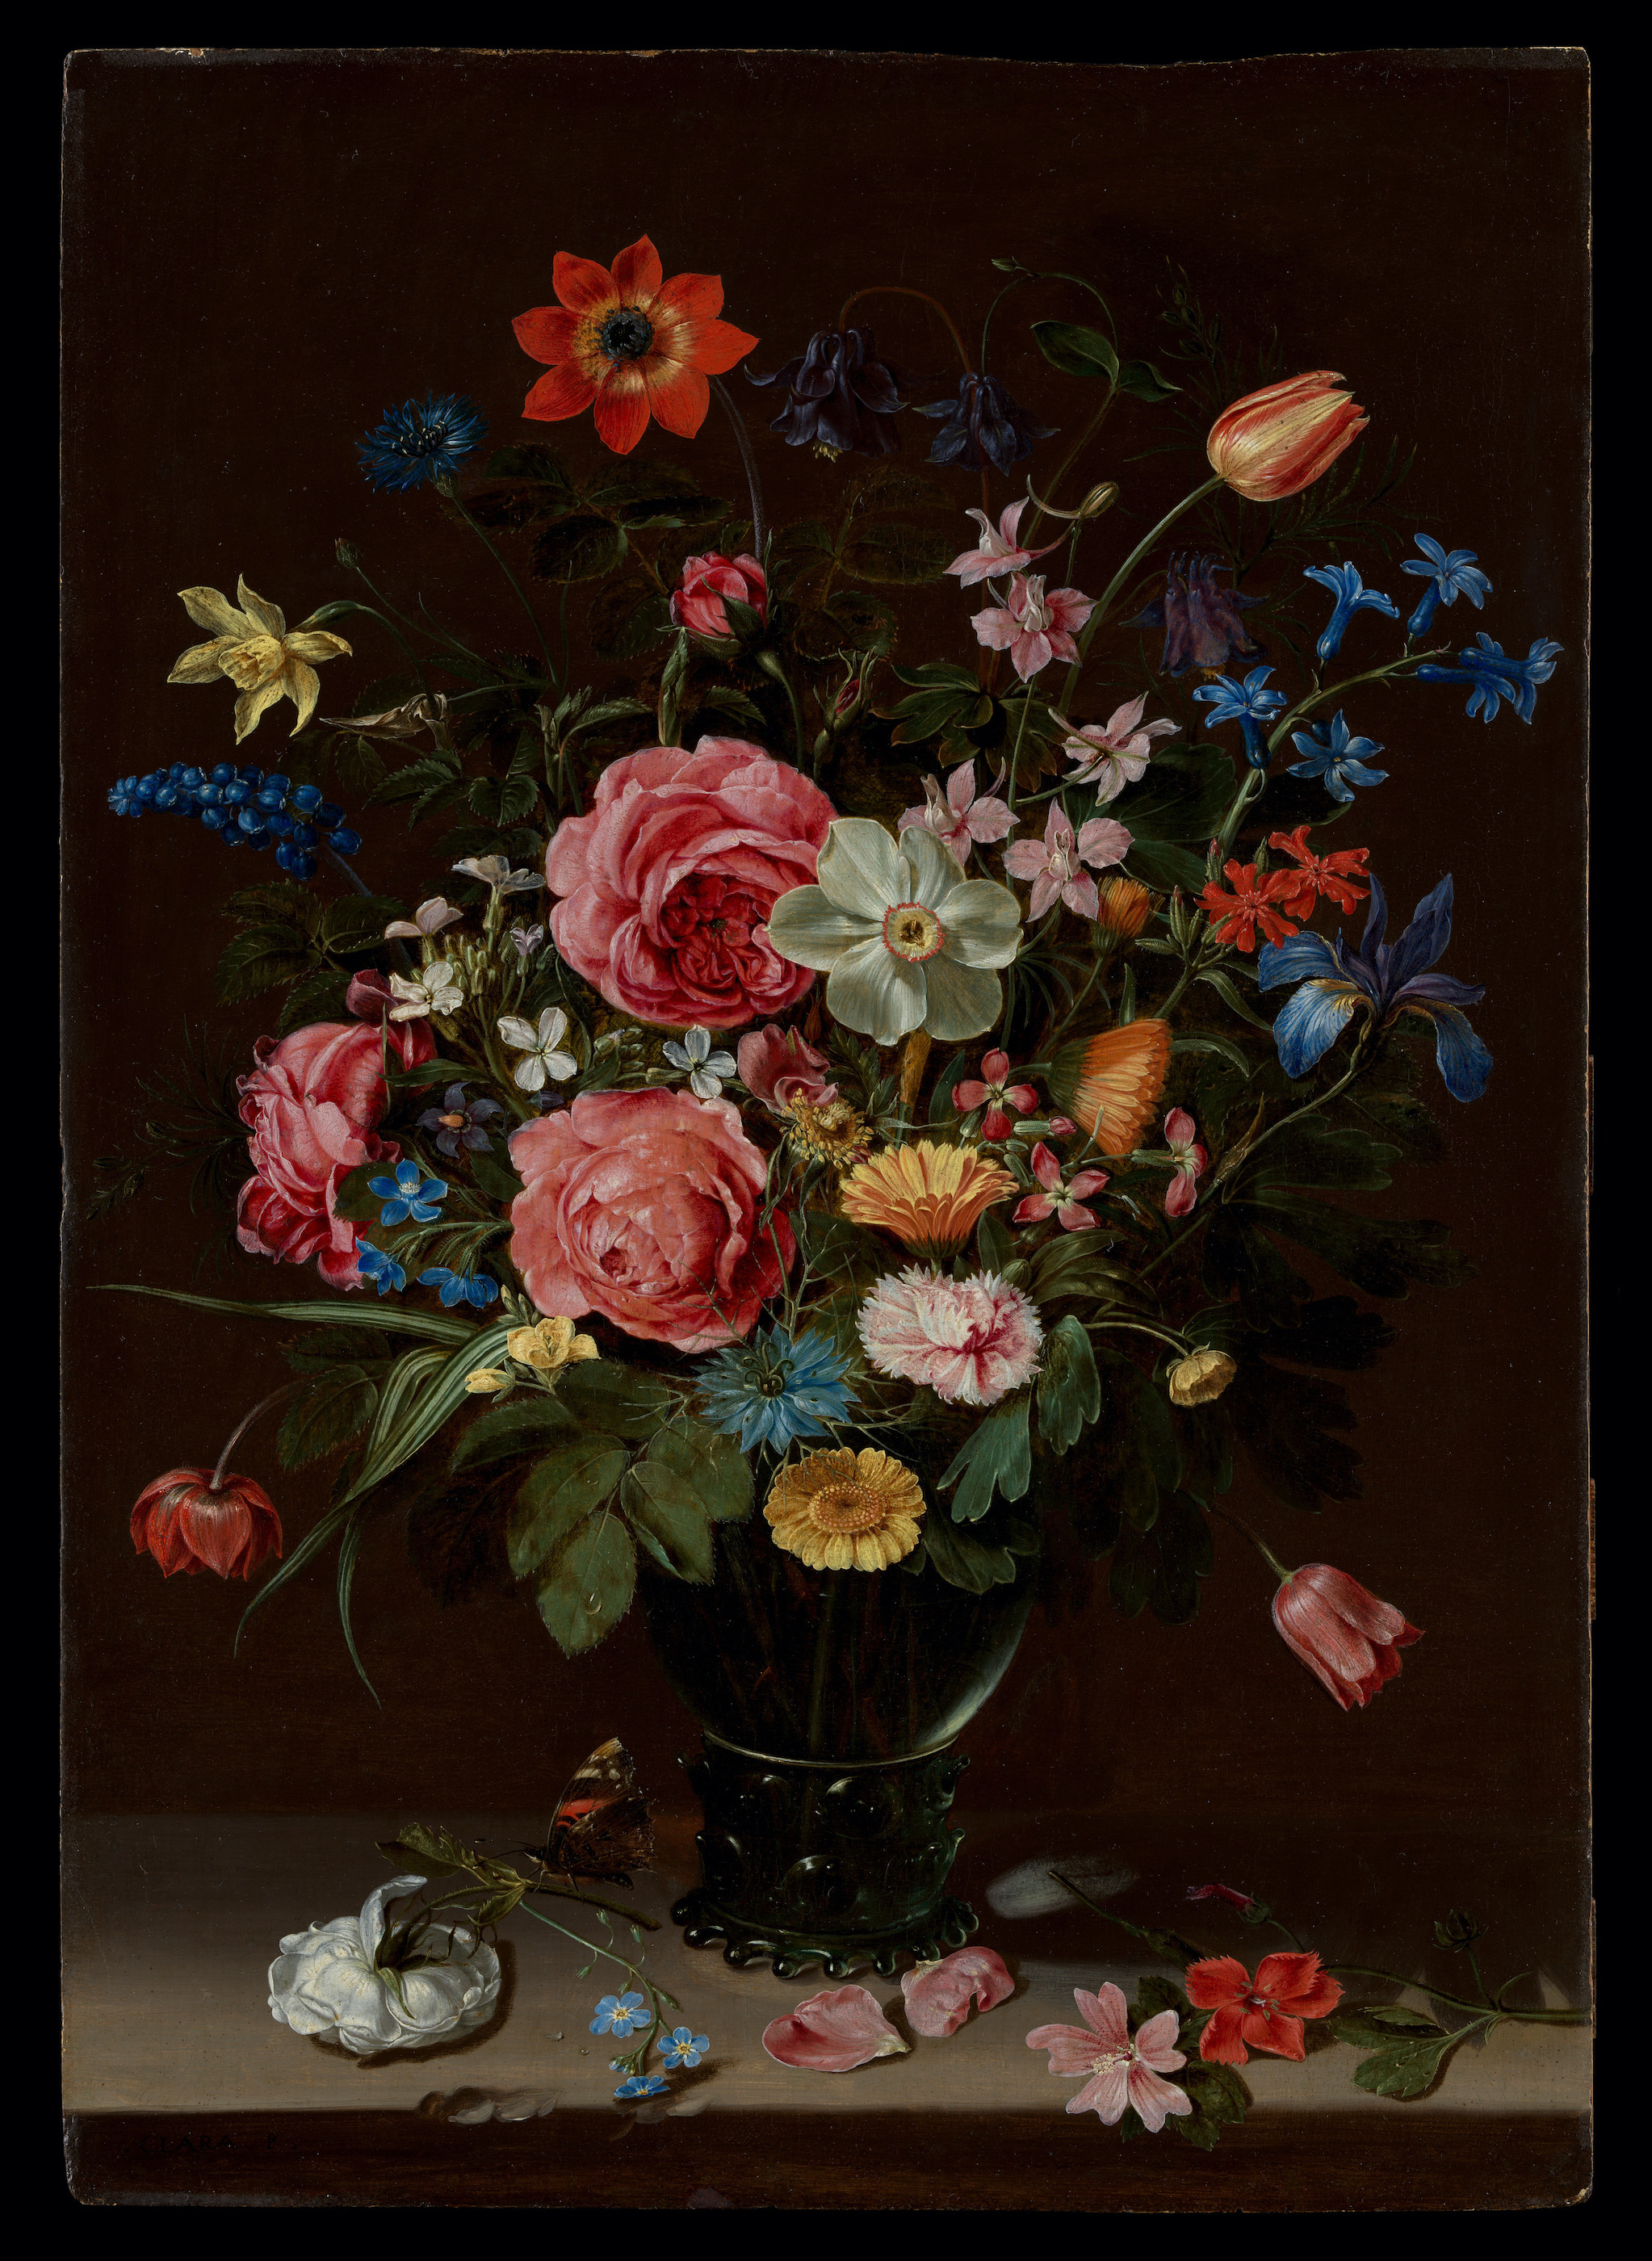 一束鮮花 by Clara Peeters - 約 1612 年 - 46 × 32 釐米 